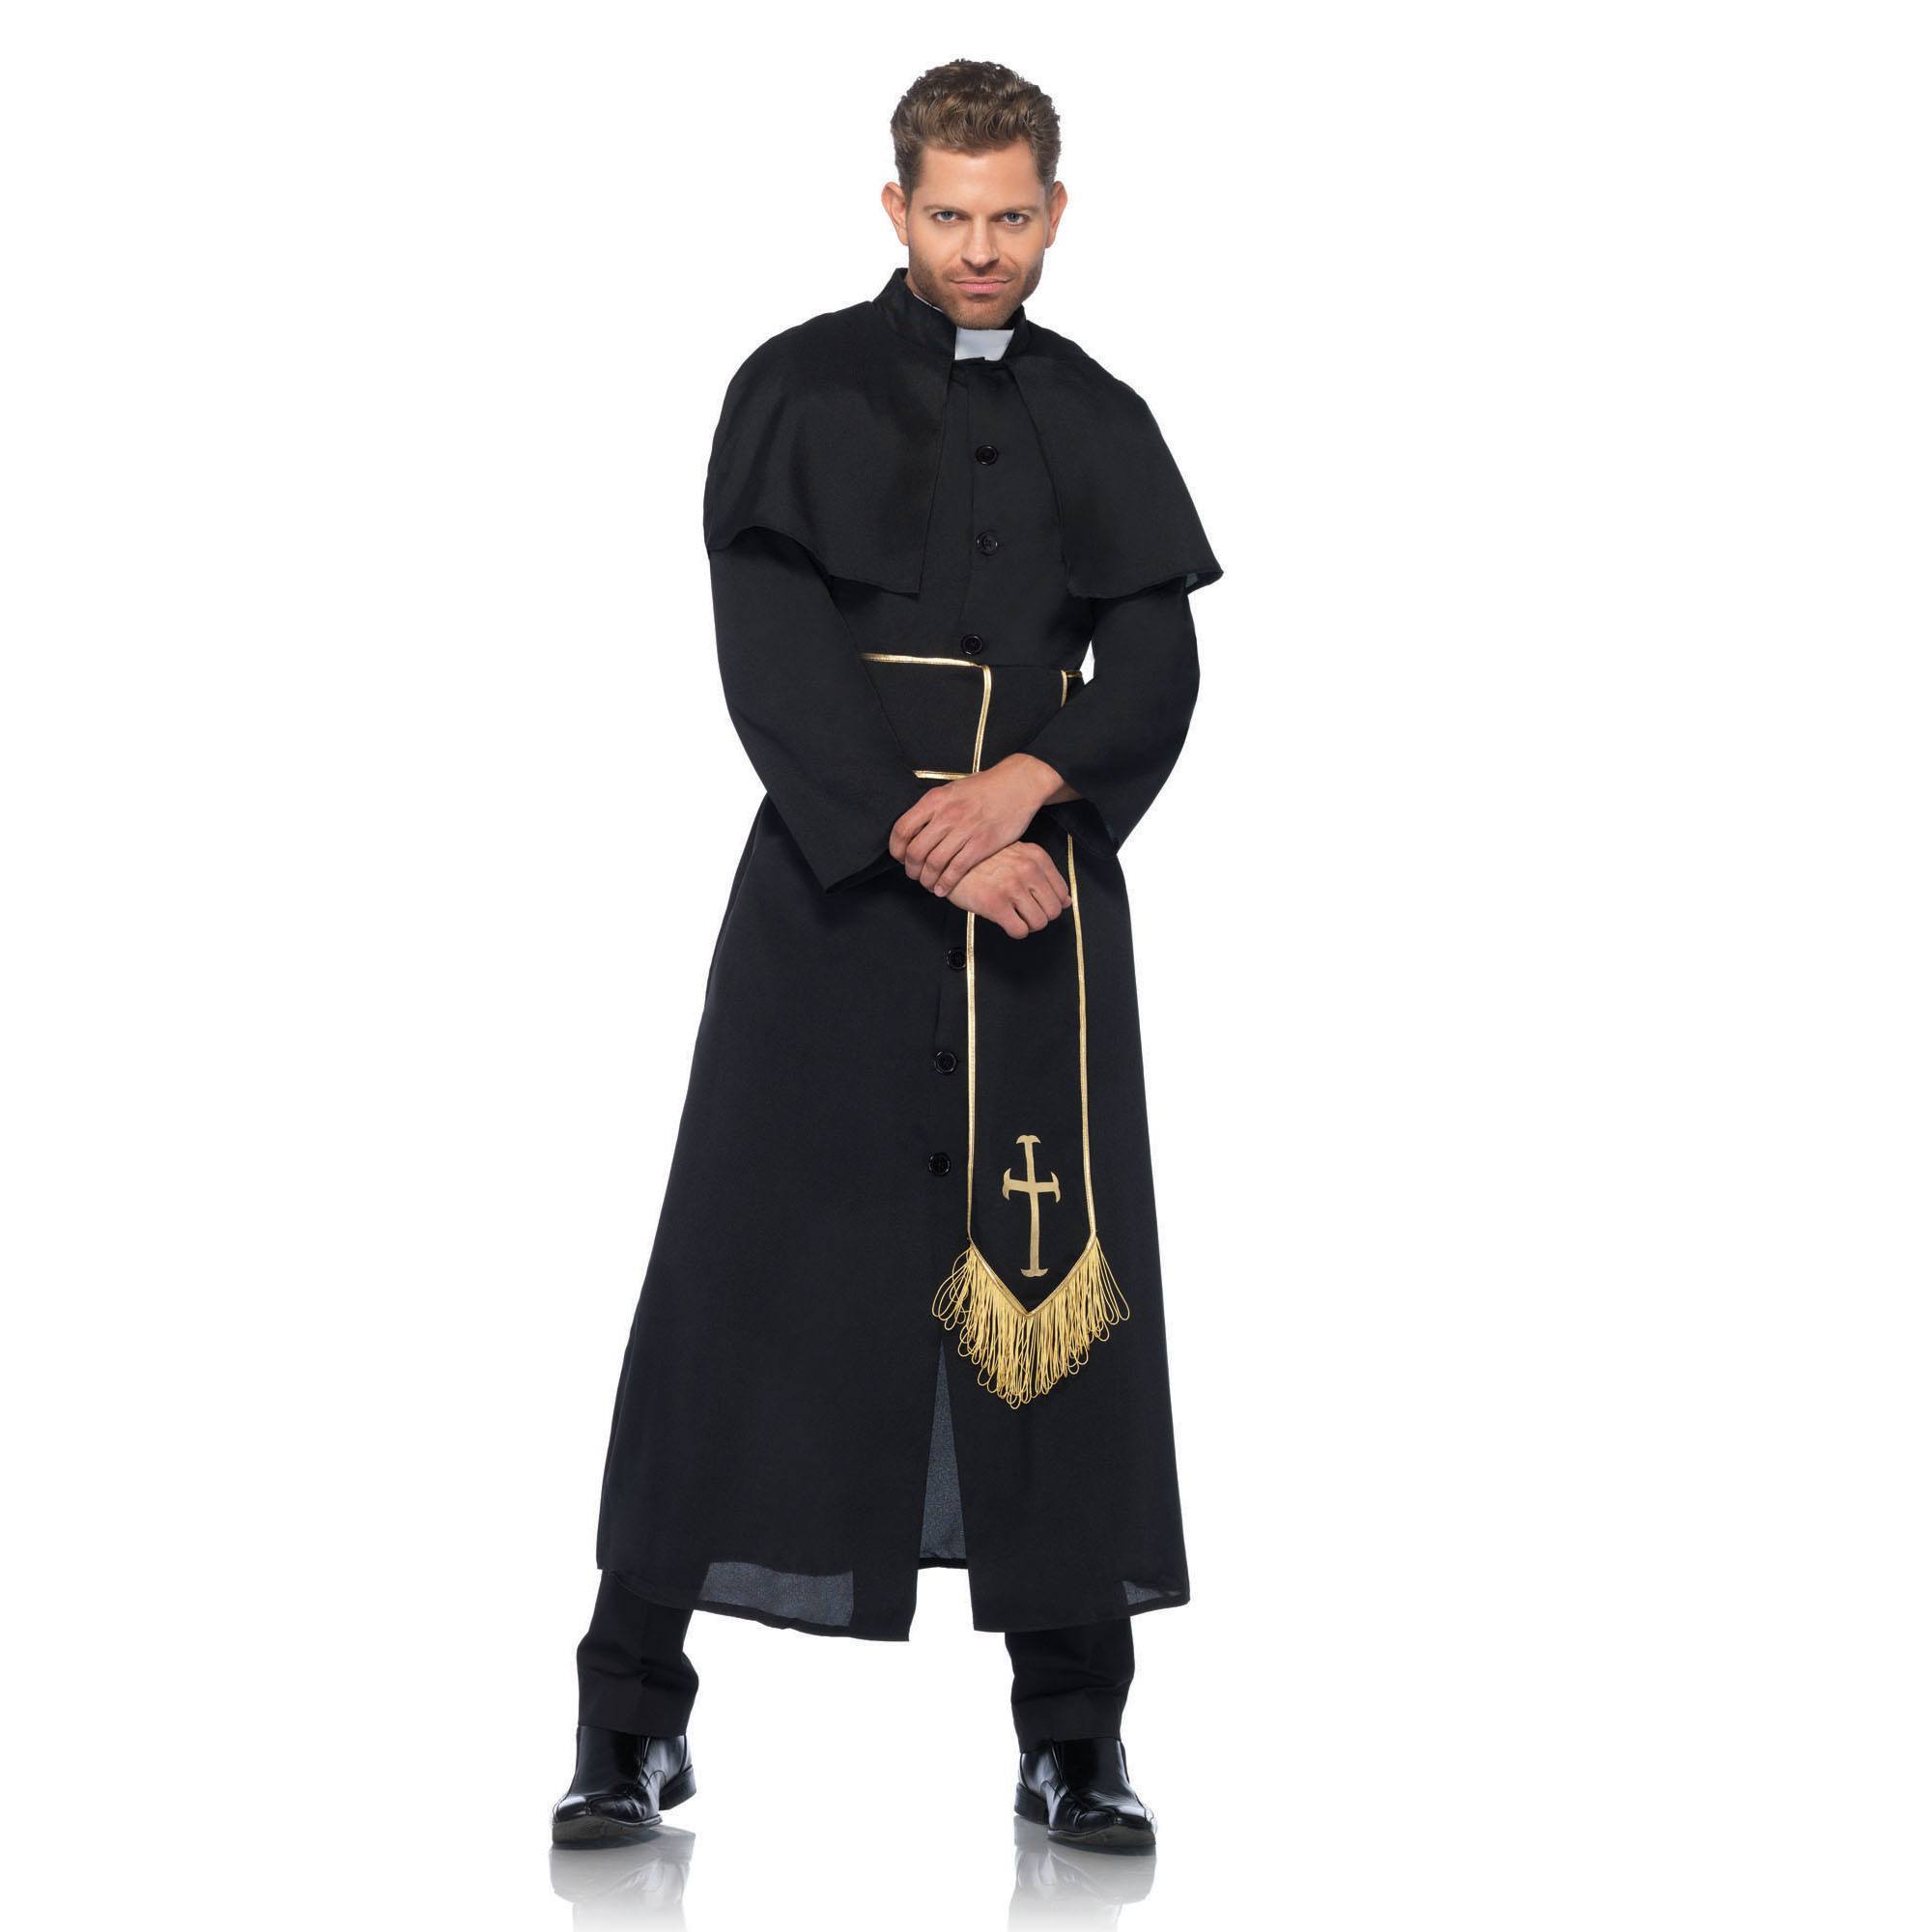 Pri est. Монашеская сутана. Мантия священника Католика. Ряса священника референс. Пастер католический священник.